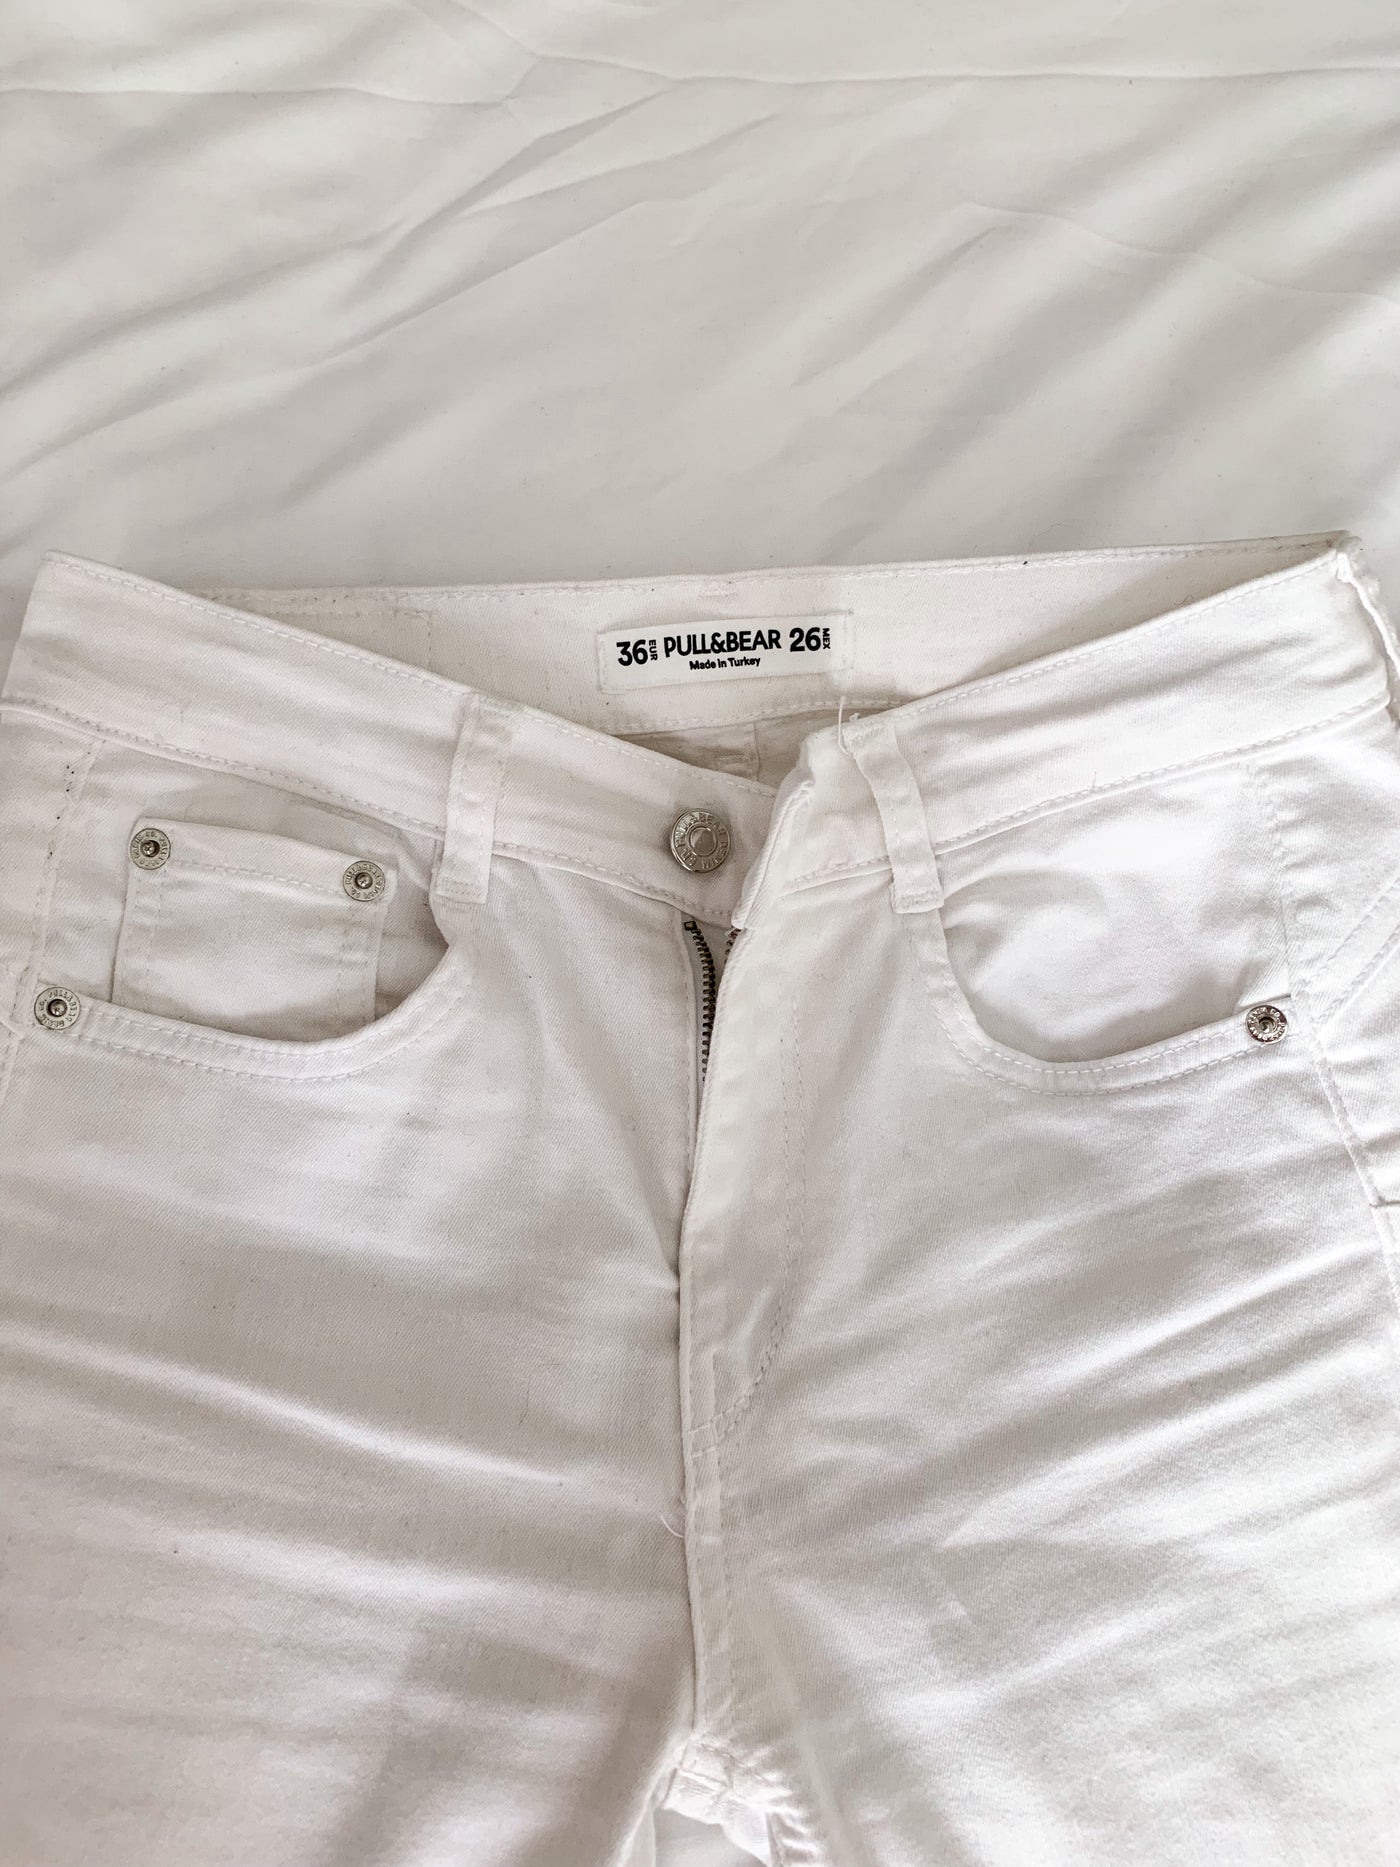 Jeans blancos rotos